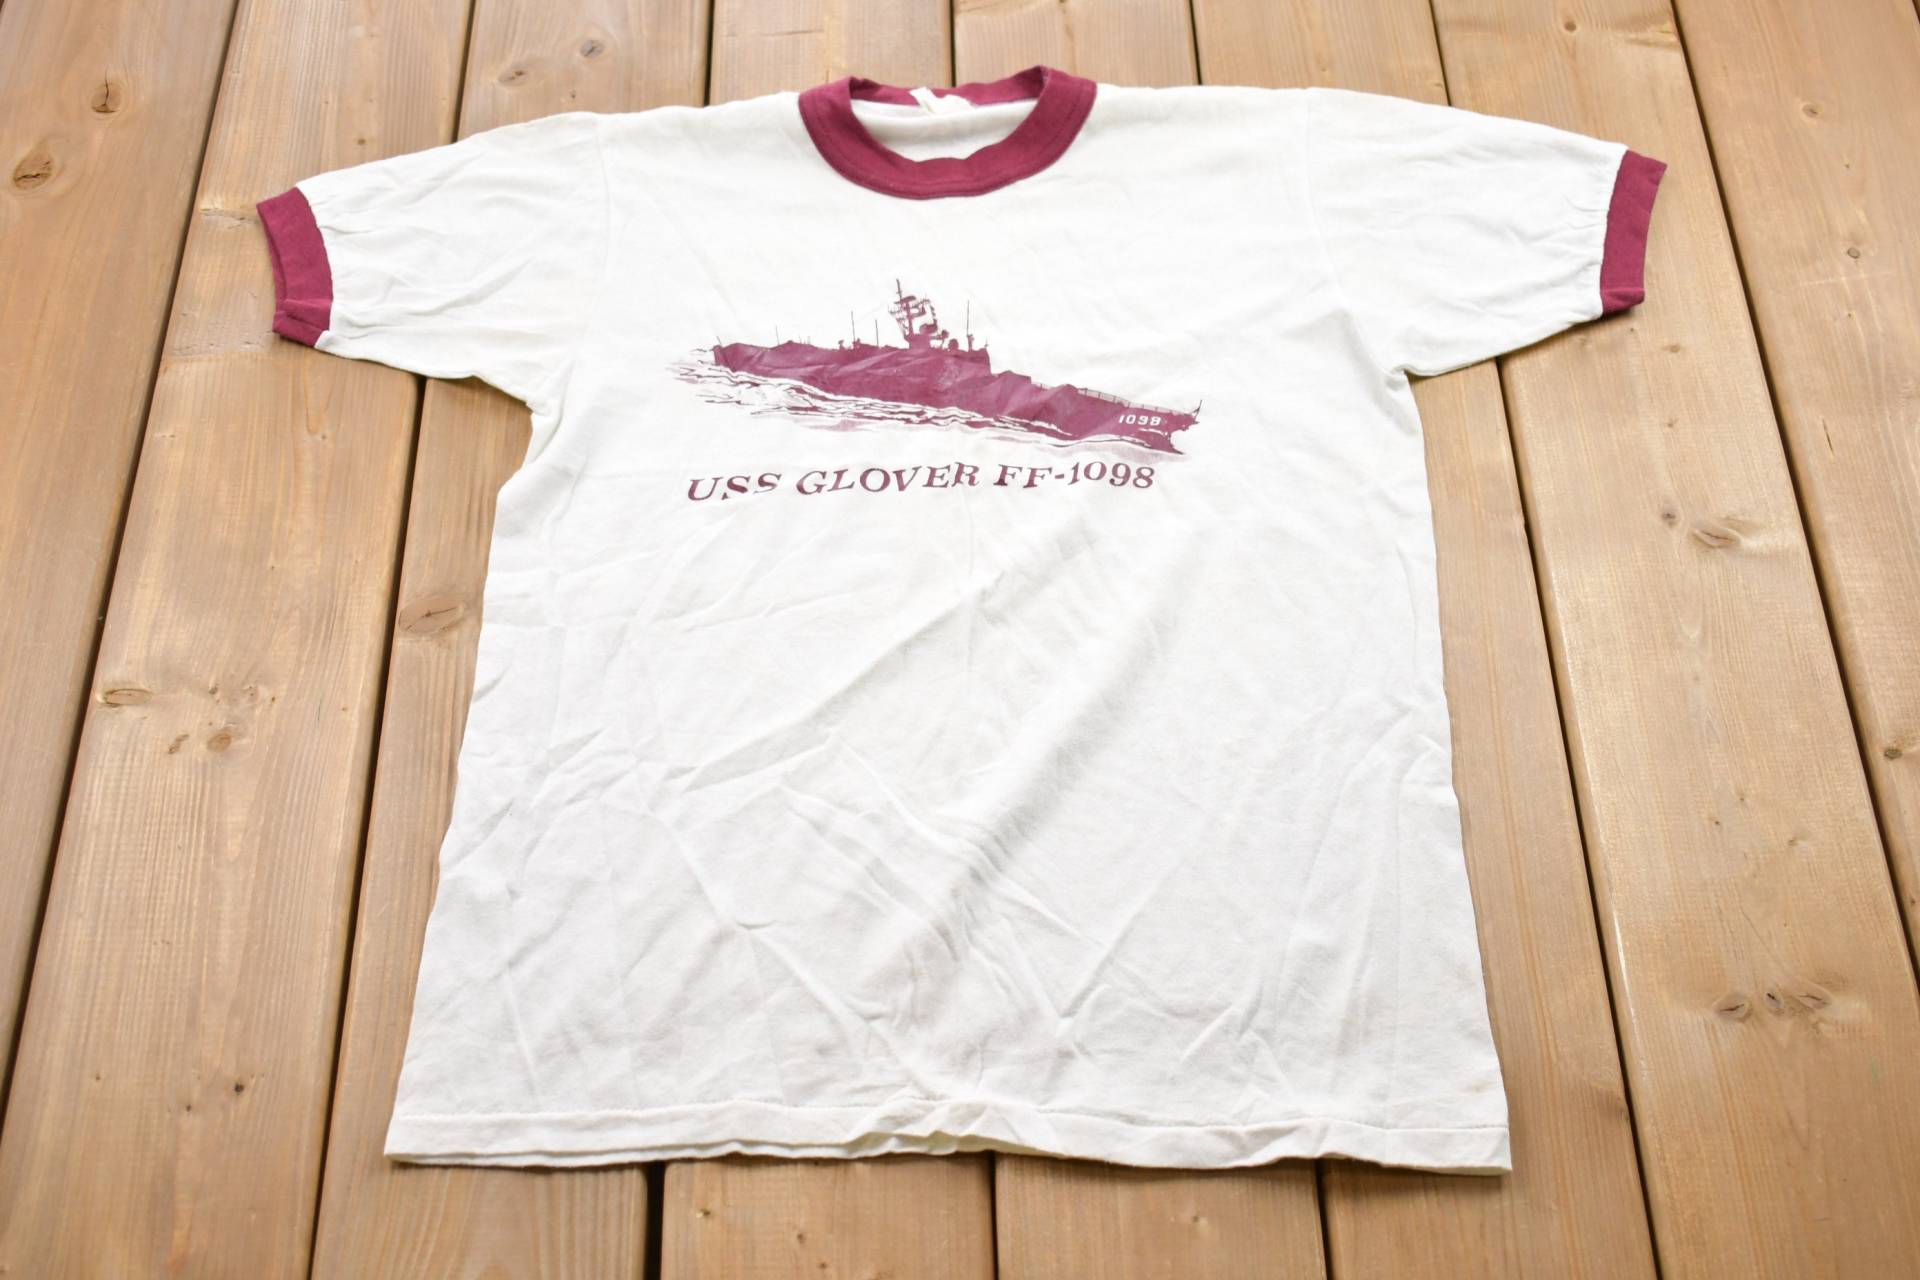 Vintage 1980S Uss Glover Ship Graphic Ringer T-Shirt/Grafik 80Er 90Er Jahre Streetwear Retro Style Single Stitch Made in Usa von Lostboysvintage